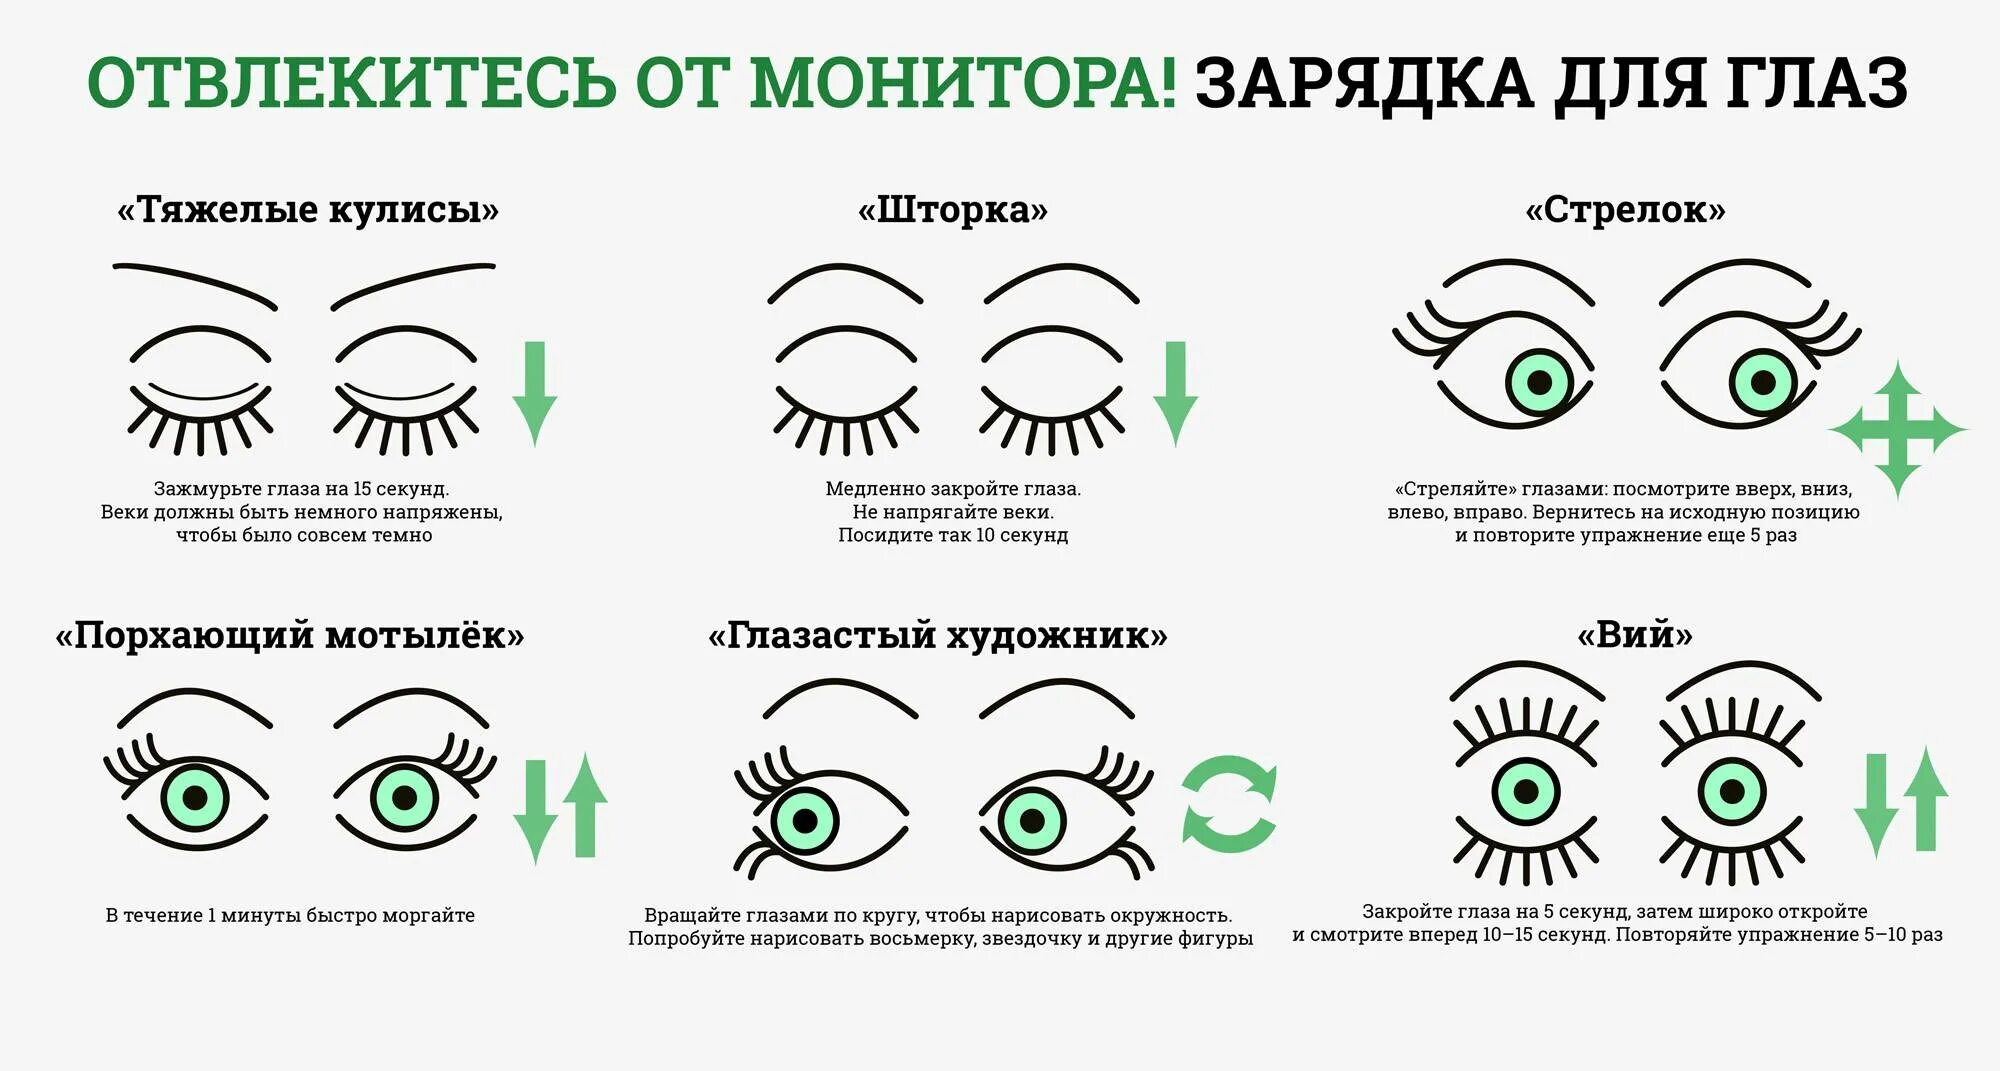 Тема урока глаз. Гимнастика для глаз для улучшения зрения комплекс упражнений. Гимнастика для глаз для детей 10-11 лет для улучшения зрения. Схема зарядки для глаз для восстановления зрения. Гимнастика для глаз схемы упражнений.